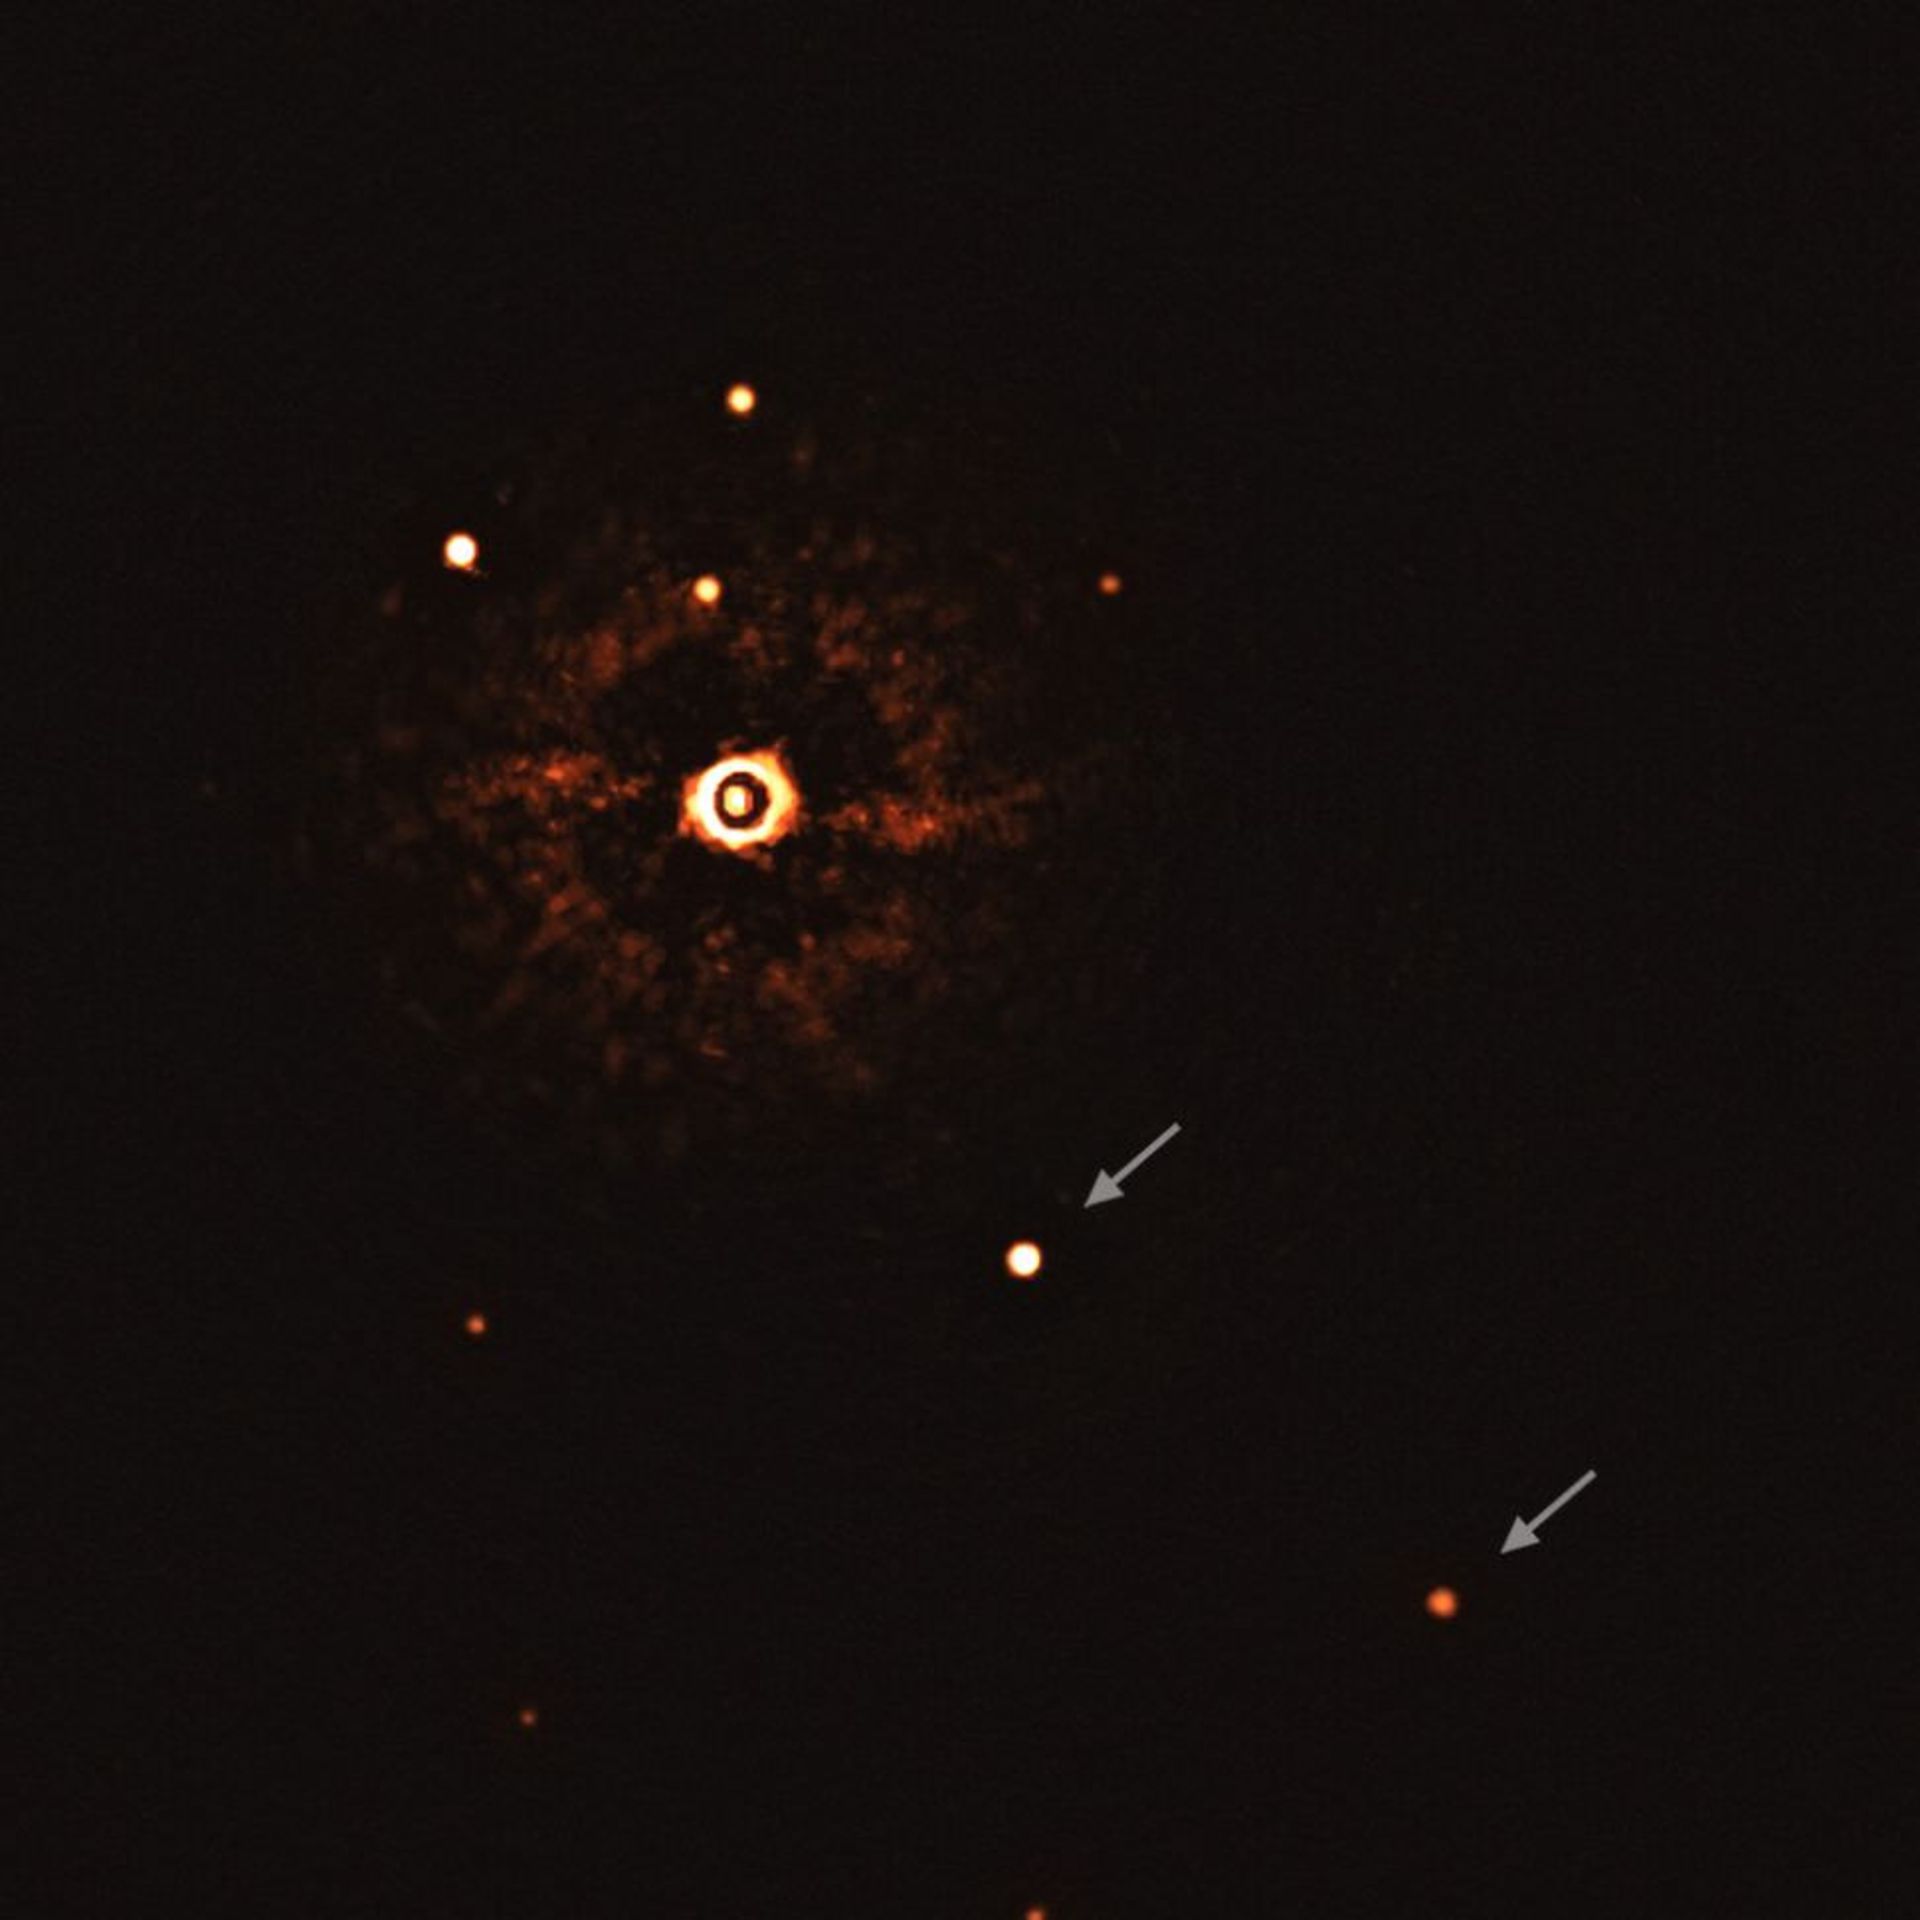 مرجع متخصصين ايران نخستين تصوير مستقيم از منظومه اي چند سياره اي با ستاره خورشيدمانند